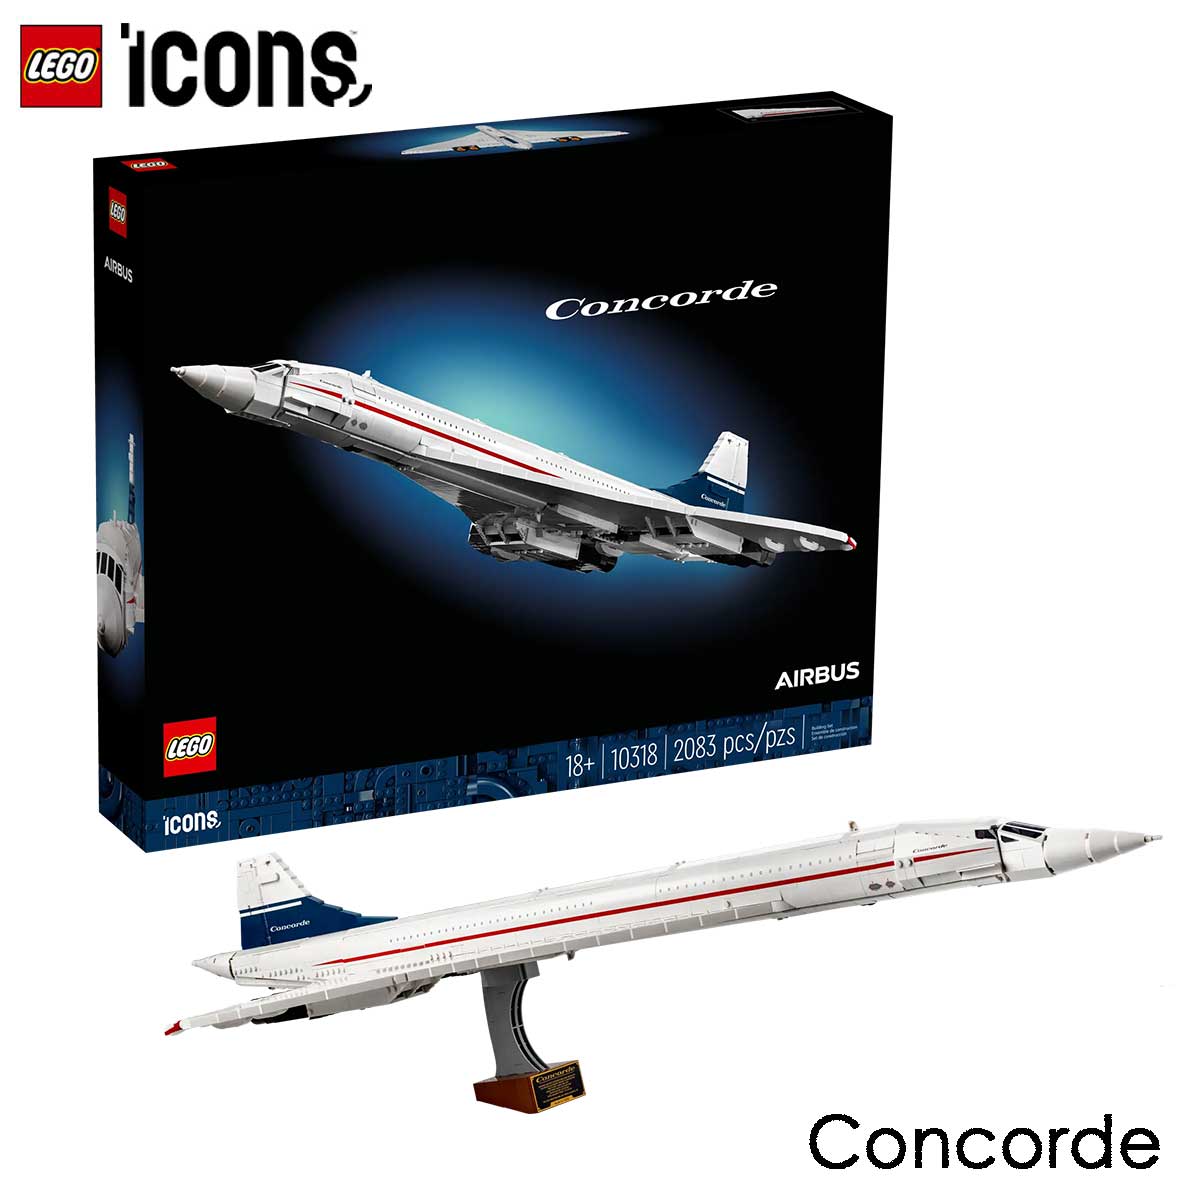 レゴ (LEGO) アイコン コンコルド 10318 国内流通正規品 玩具 ブロック 飛行機 乗り物 インテリア ディスプレイ おしゃれ ホビー 模型 プレゼント ギフト 誕生日 大人向け Concorde